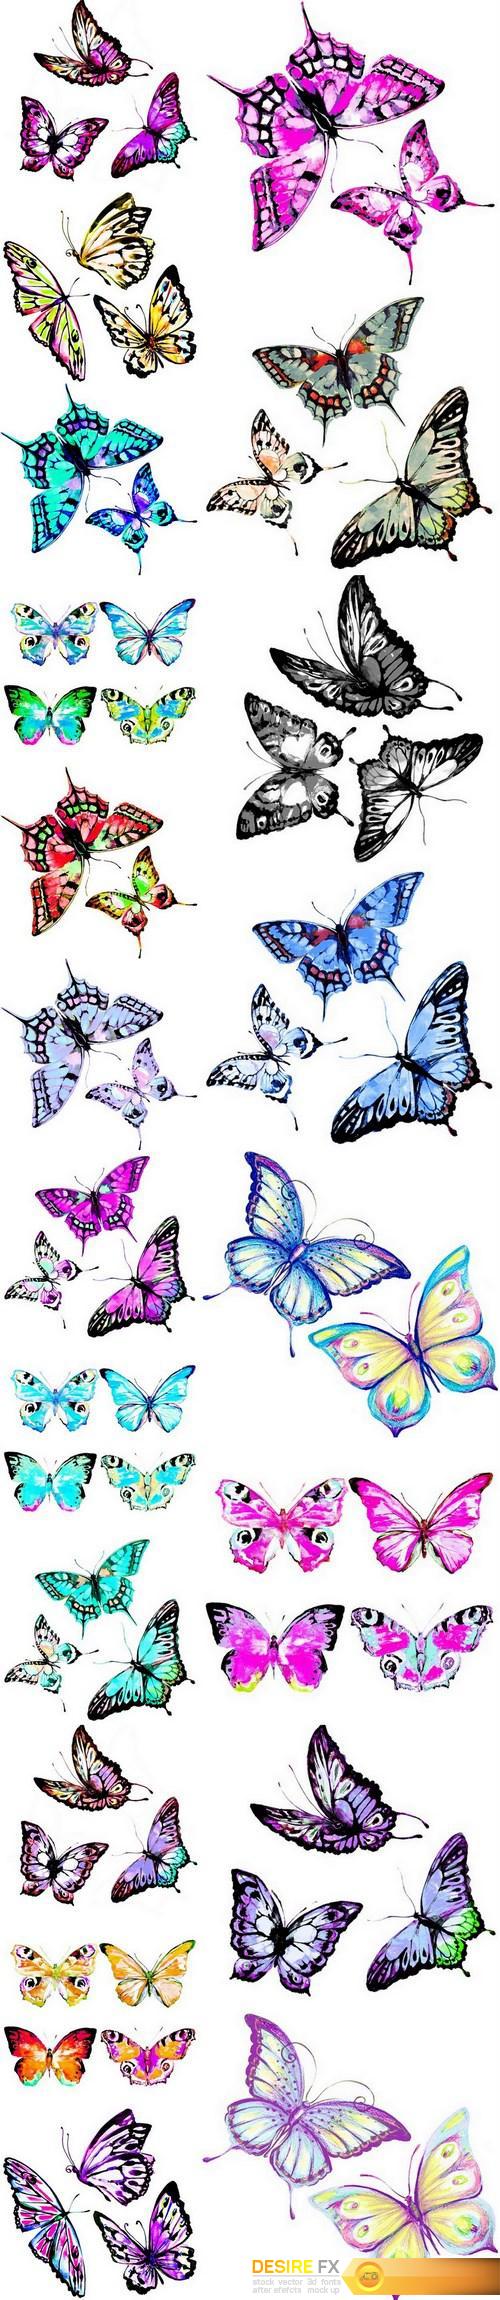 Beautiful watercolor butterflies - 20xUHQ JPEG